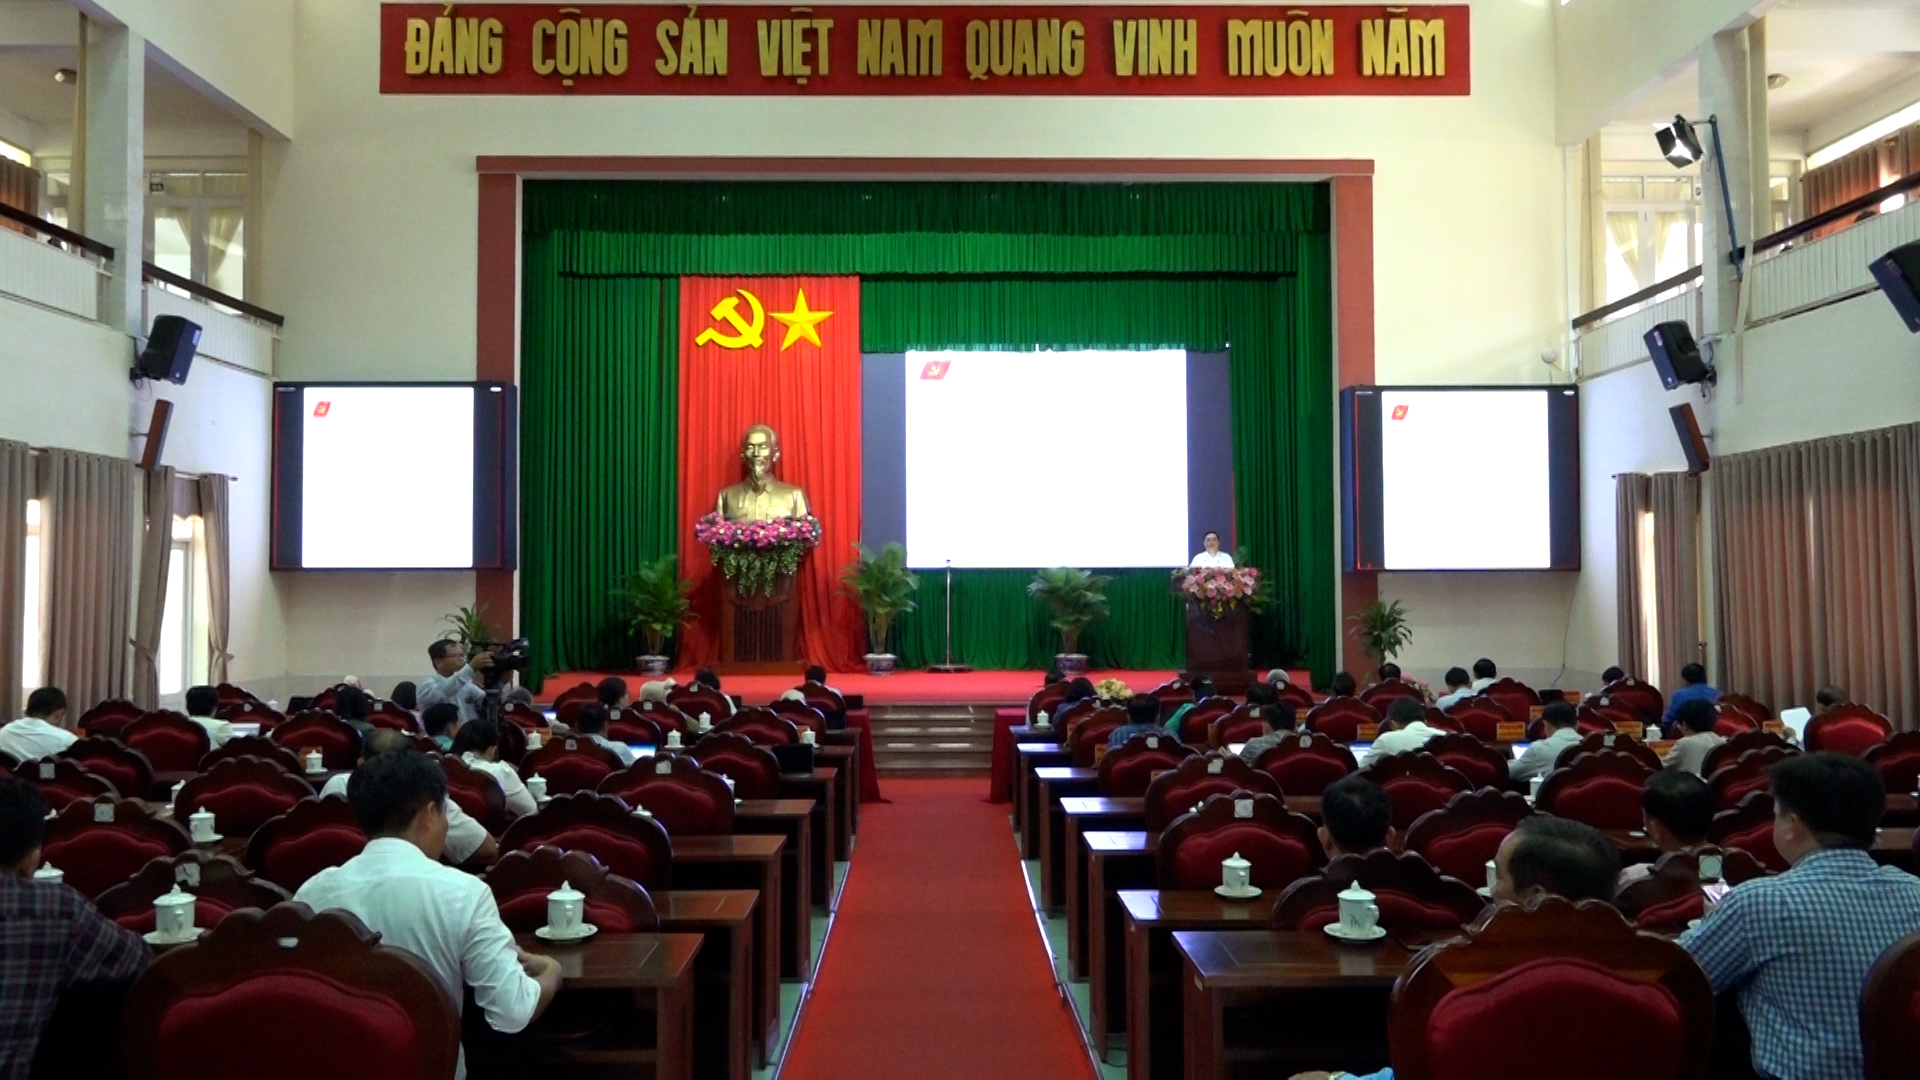 Triển khai đợt sinh hoạt chính trị, tư tưởng về nội dung tác phẩm của Tổng Bí thư Nguyễn Phú Trọng